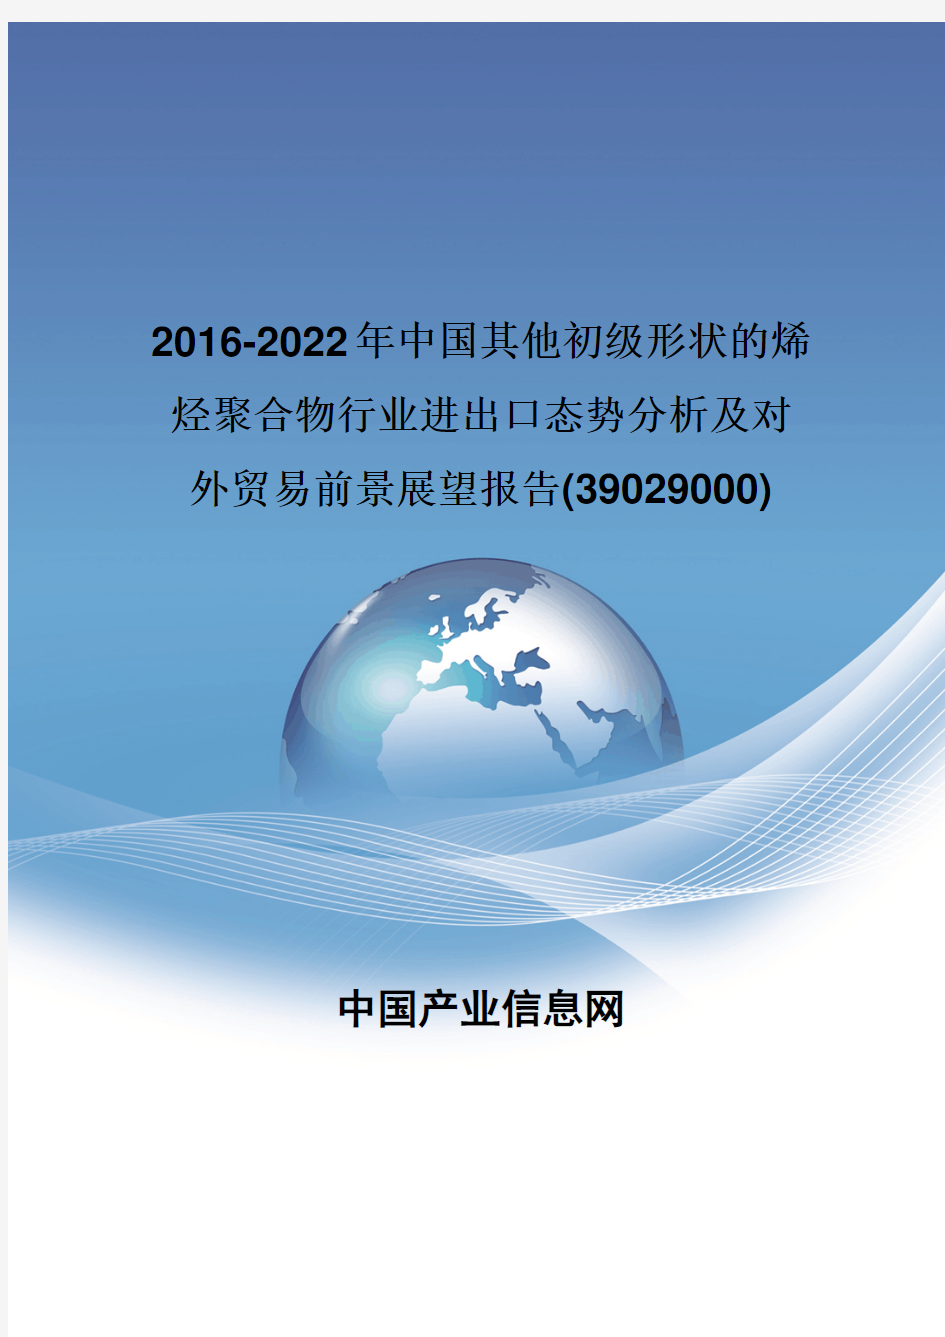 2016-2022年中国其他初级形状的烯烃聚合物行业进出口态势分析报告(39029000)